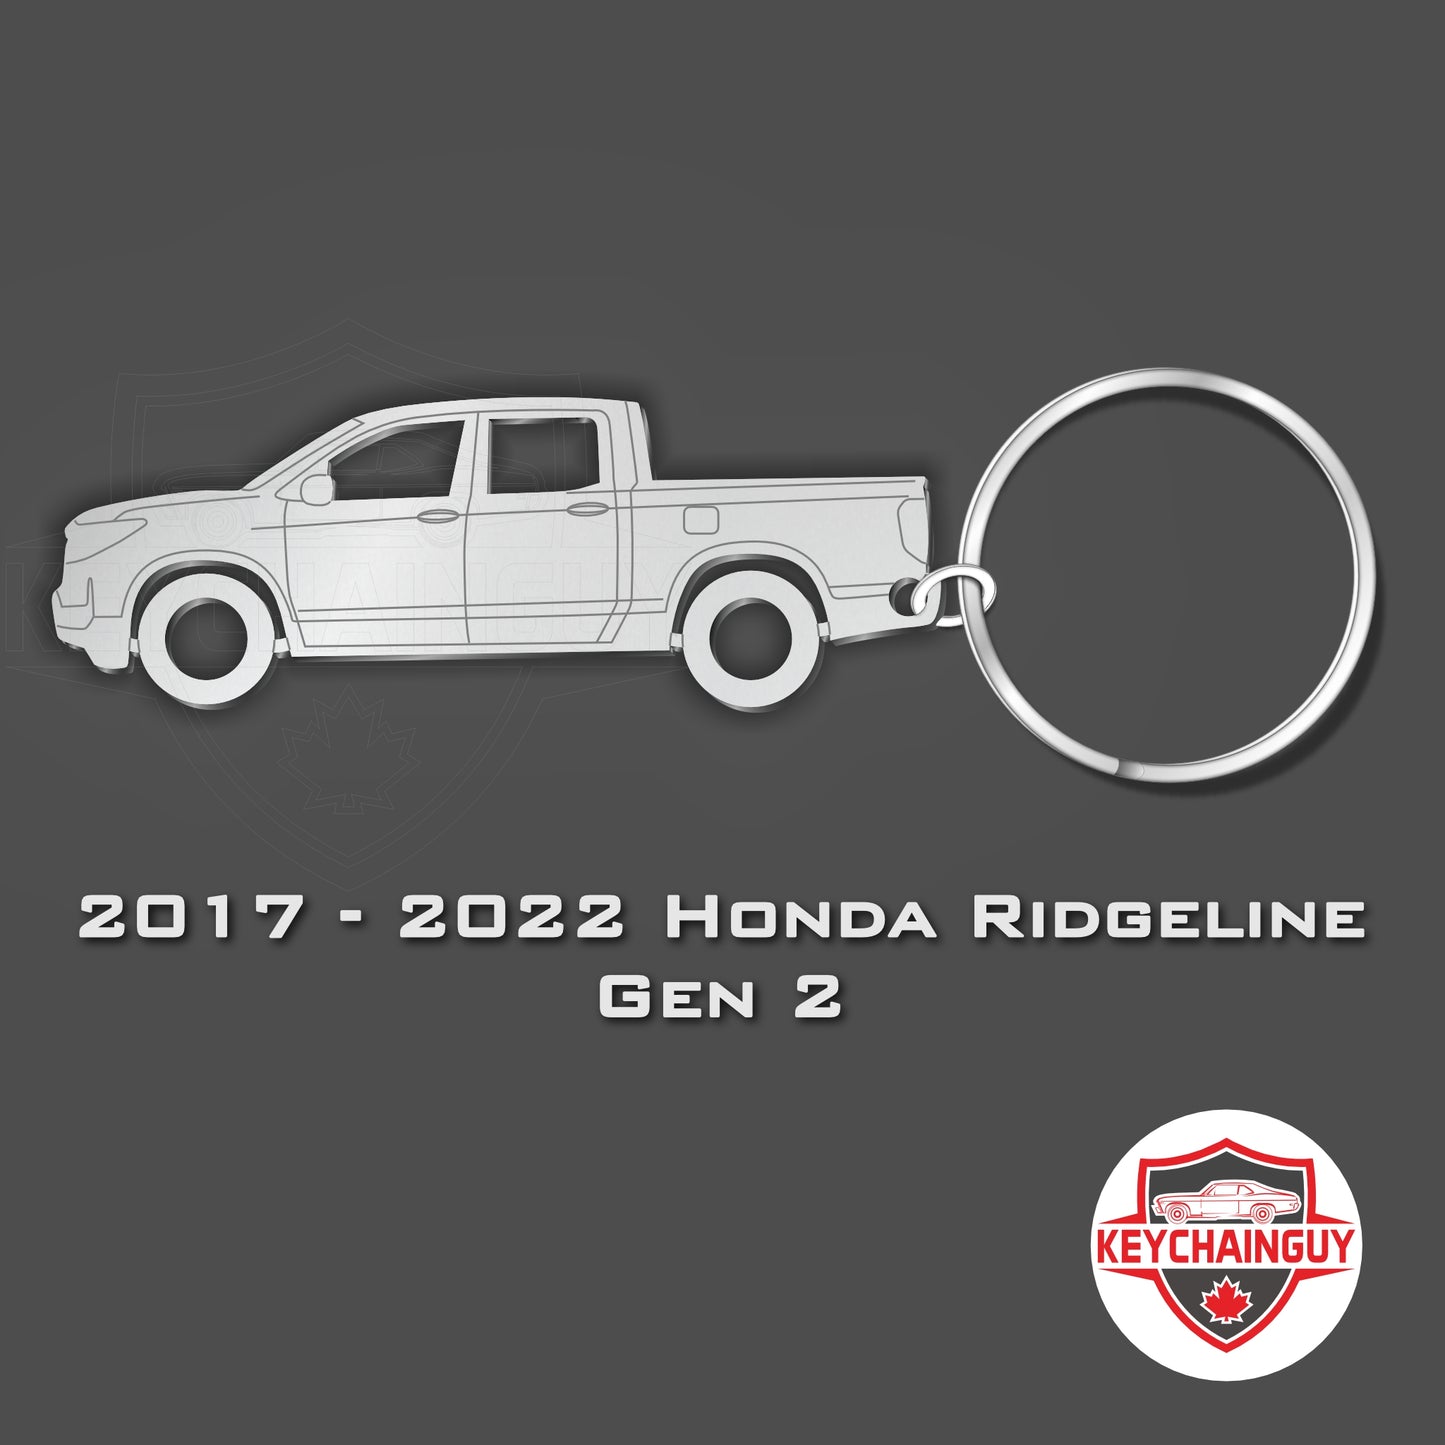 2017 - 2022 Honda Ridgeline Gen 2